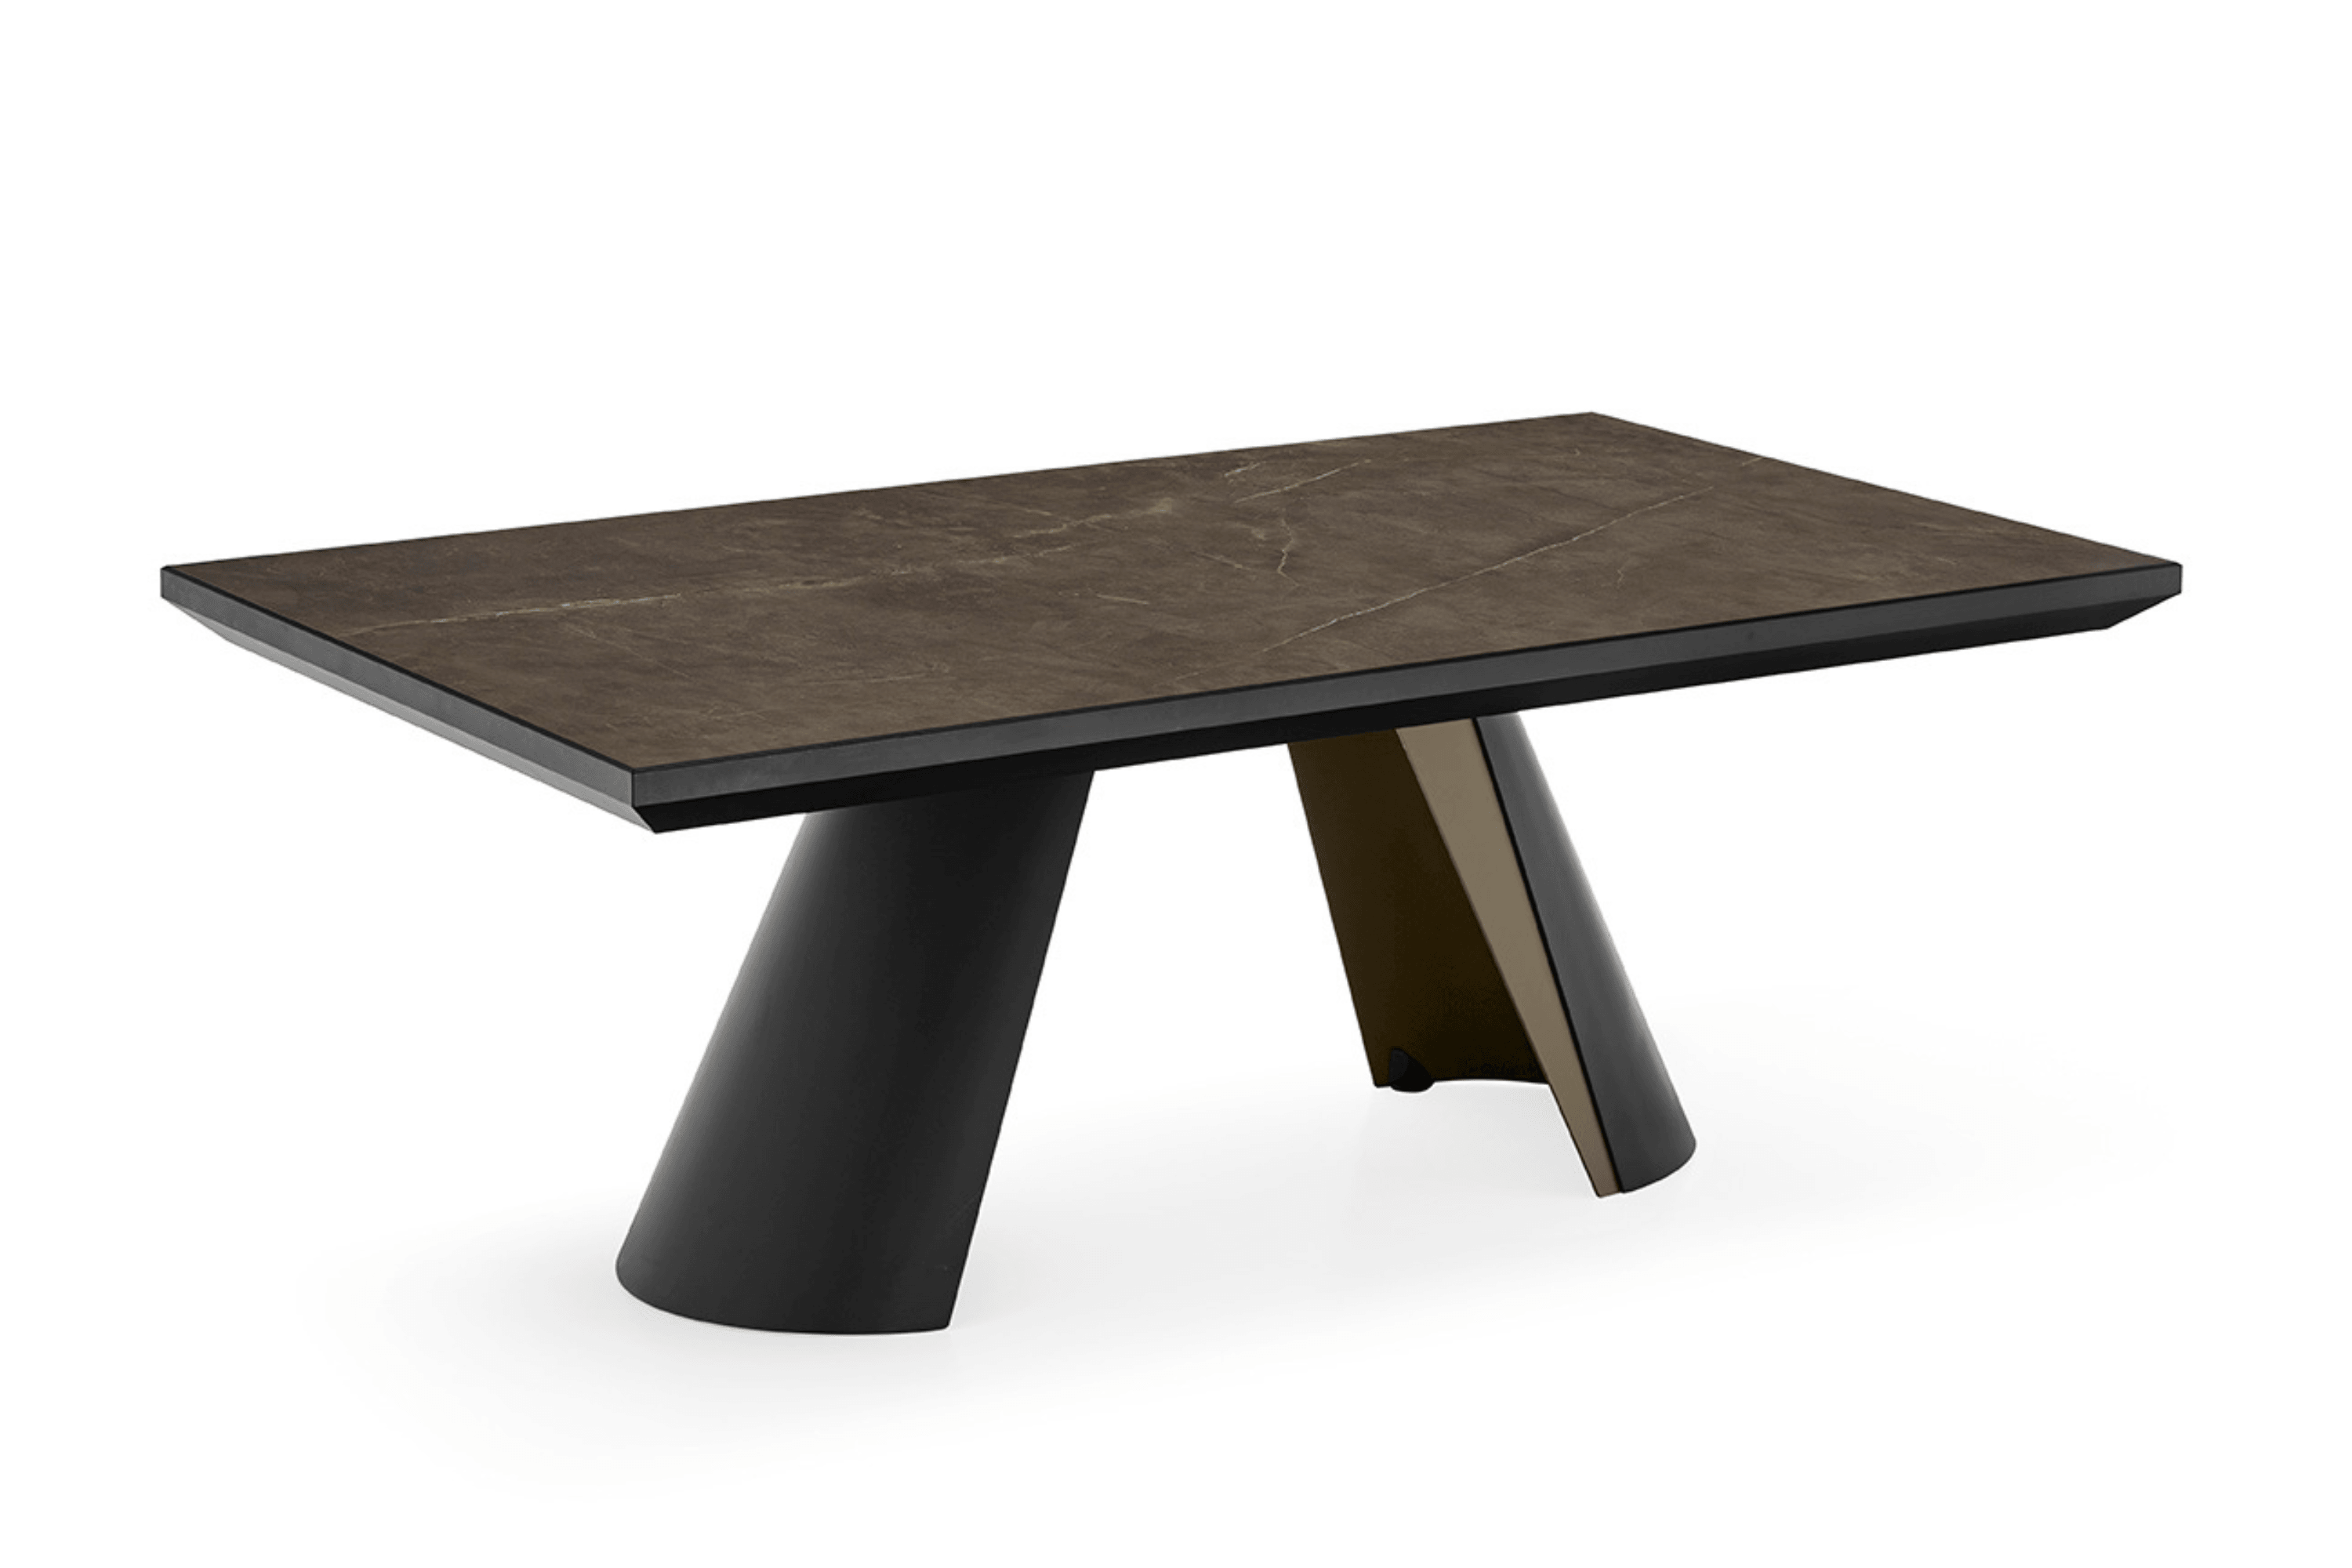 Stół rozkładany APIAN brązowa ceramika Calligaris matowa czerń matowy brąz  Eye on Design